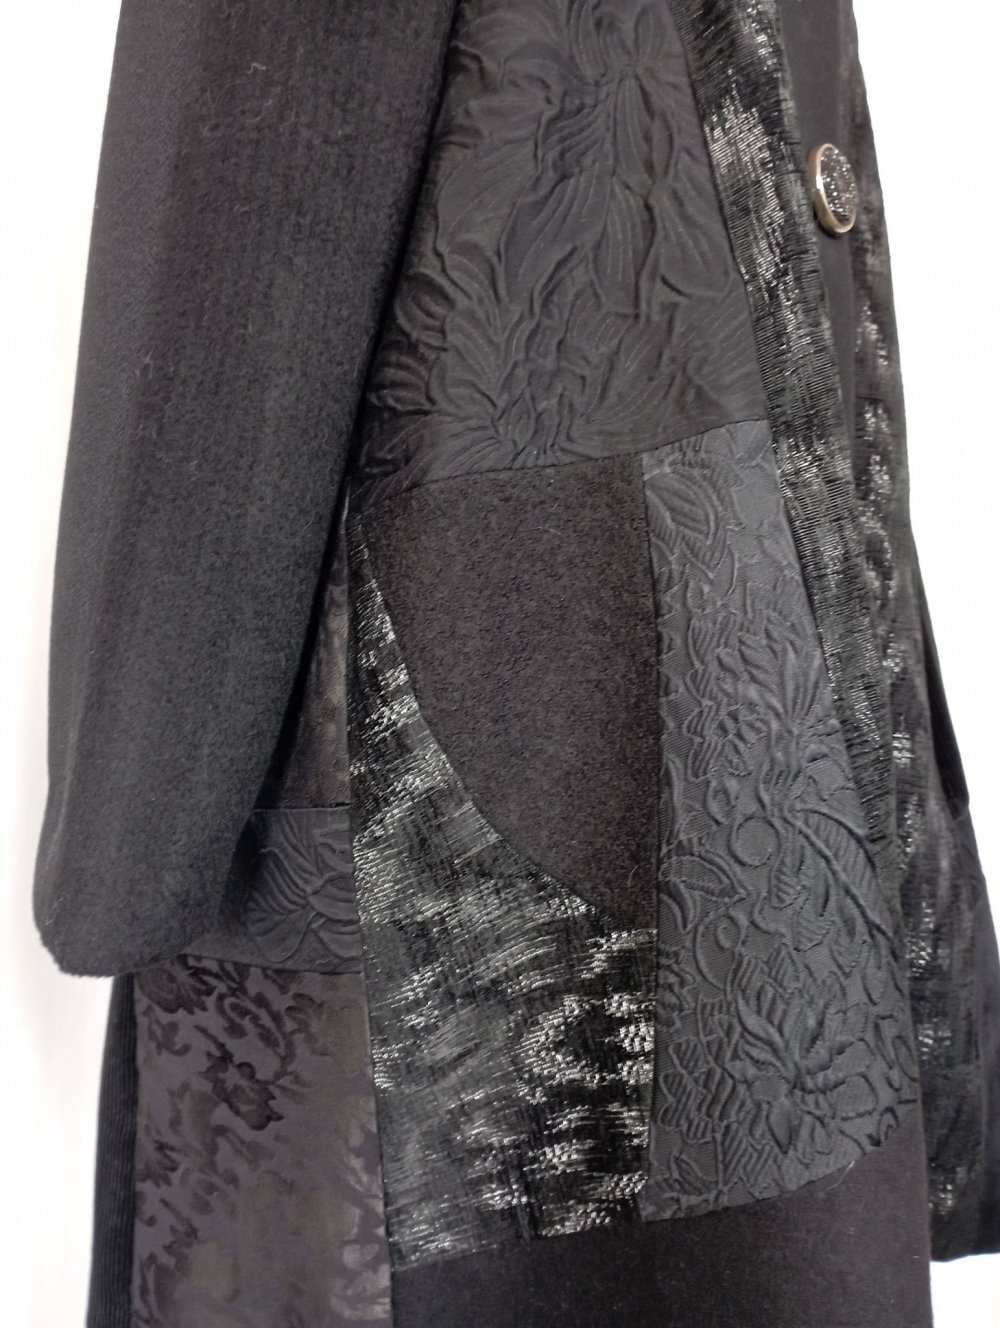 Manteau noir de forme trapeze en patchwork de lainages--2226977313877